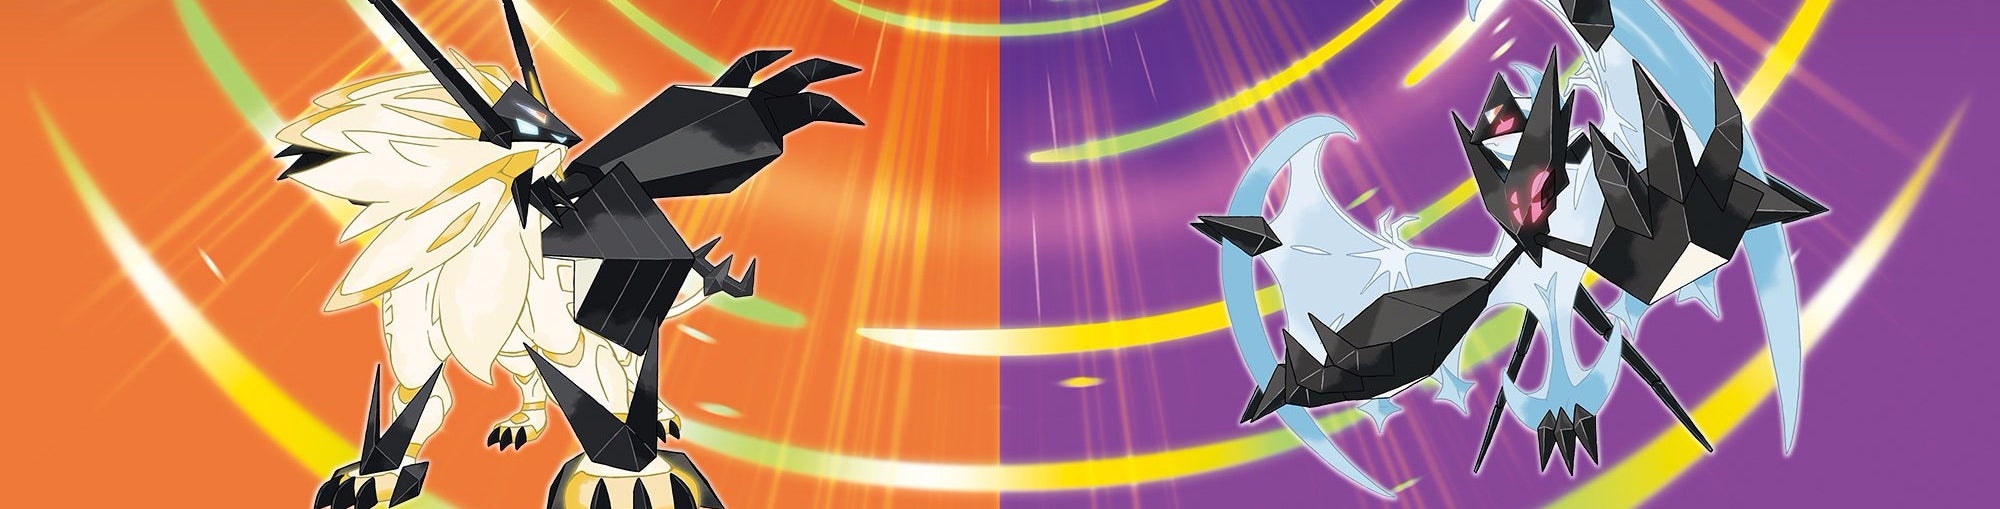 Imagen para Análisis de Pokémon UltraSol y UltraLuna